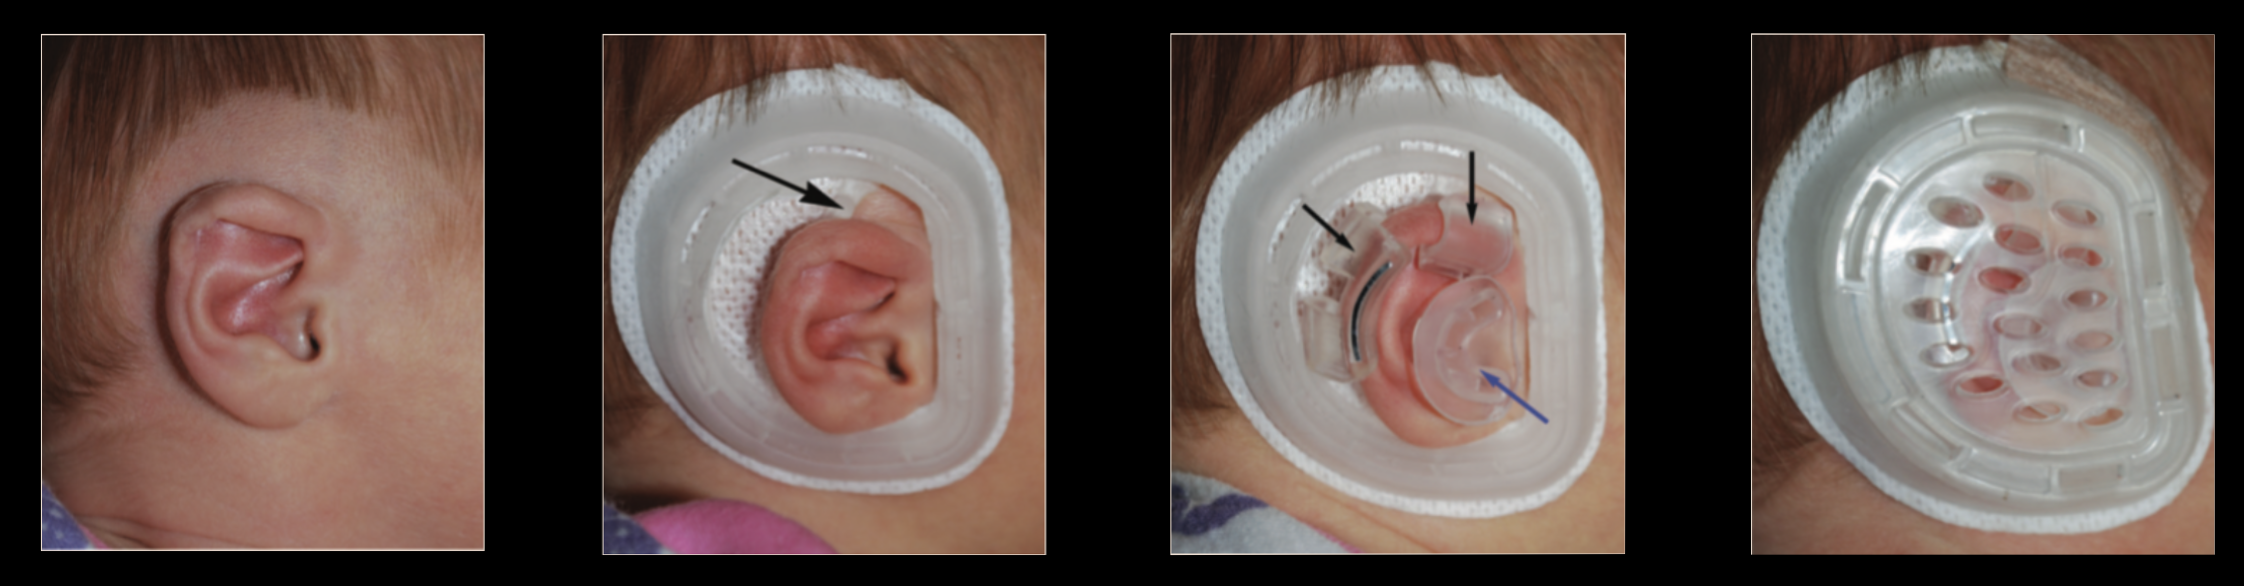 Earwell-toestel voor niet-chirurgische correctie van oorafwijkingen bij baby's